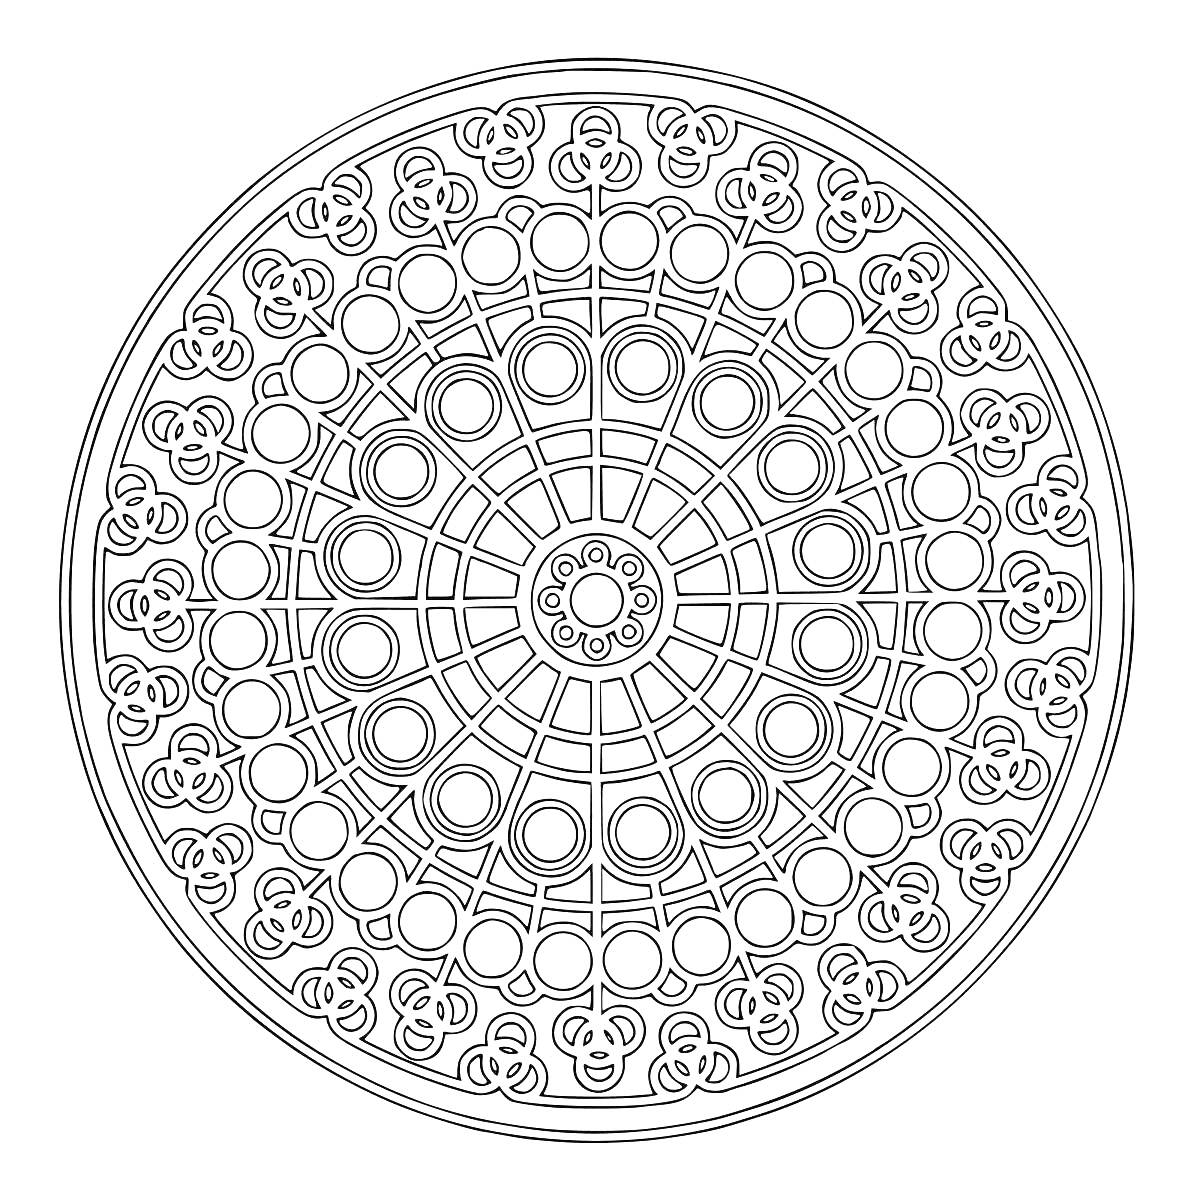 Мандала с круговыми узорами из повторяющихся окружностей и цветочных орнаментов